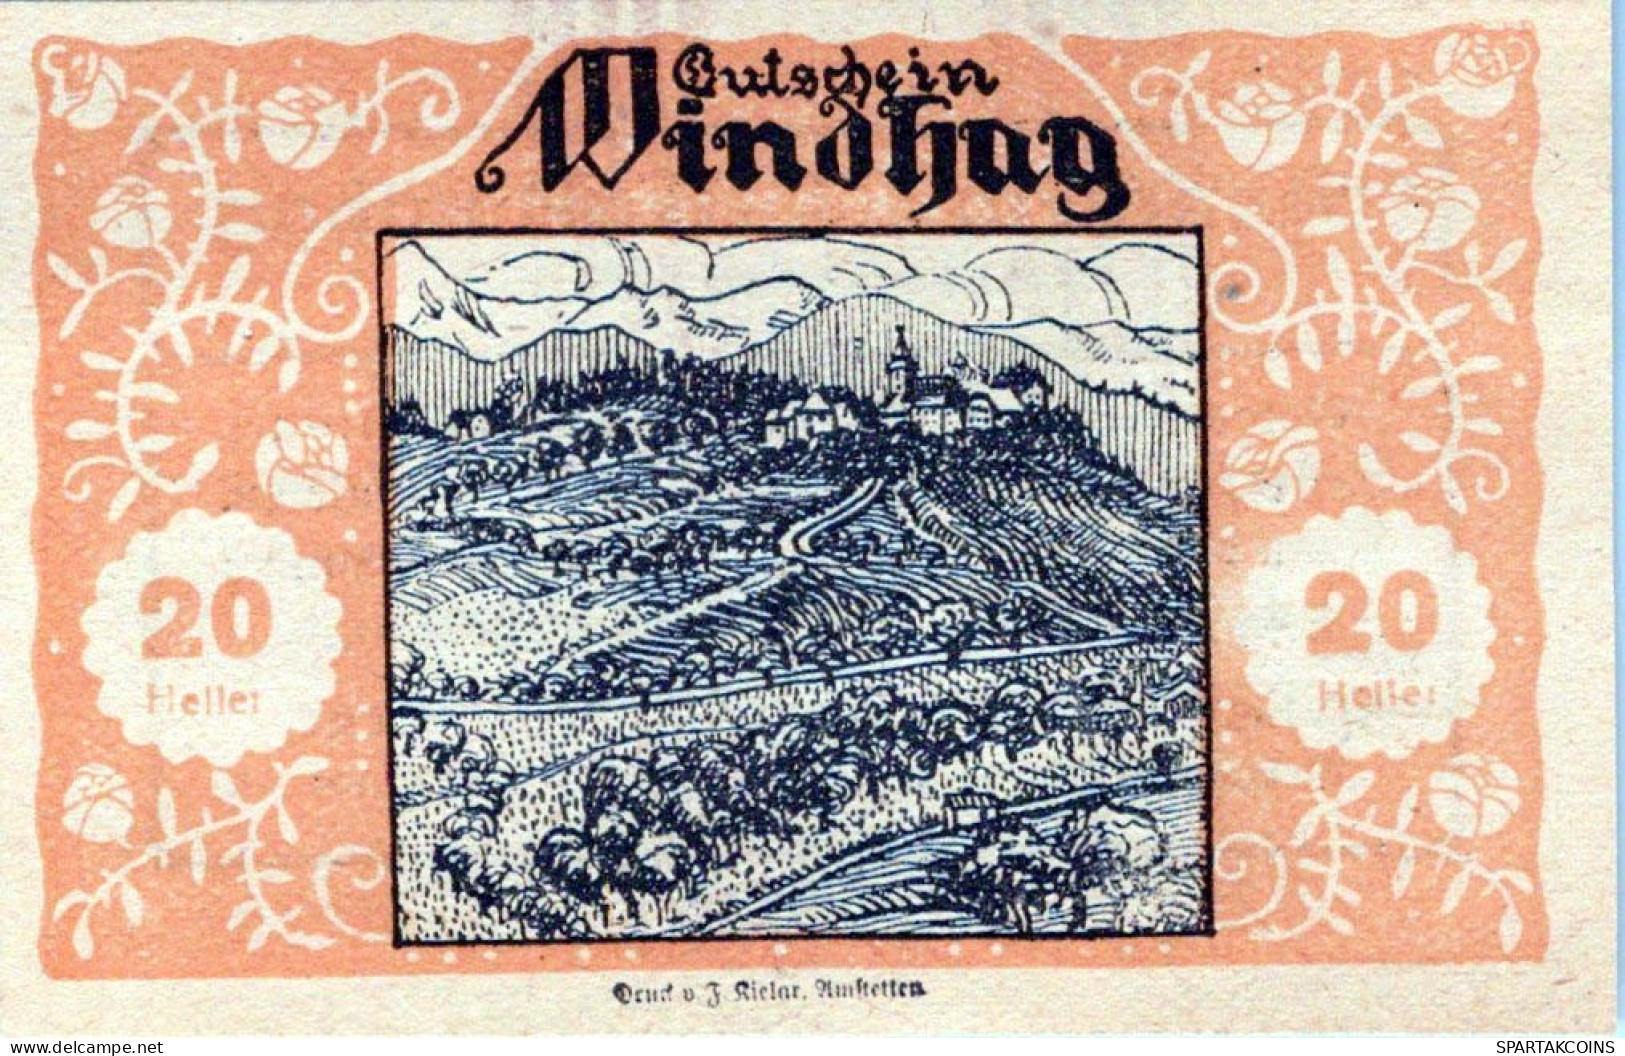 20 HELLER 1920 Stadt WINDHAG Niedrigeren Österreich Notgeld Papiergeld Banknote #PG749 - Lokale Ausgaben